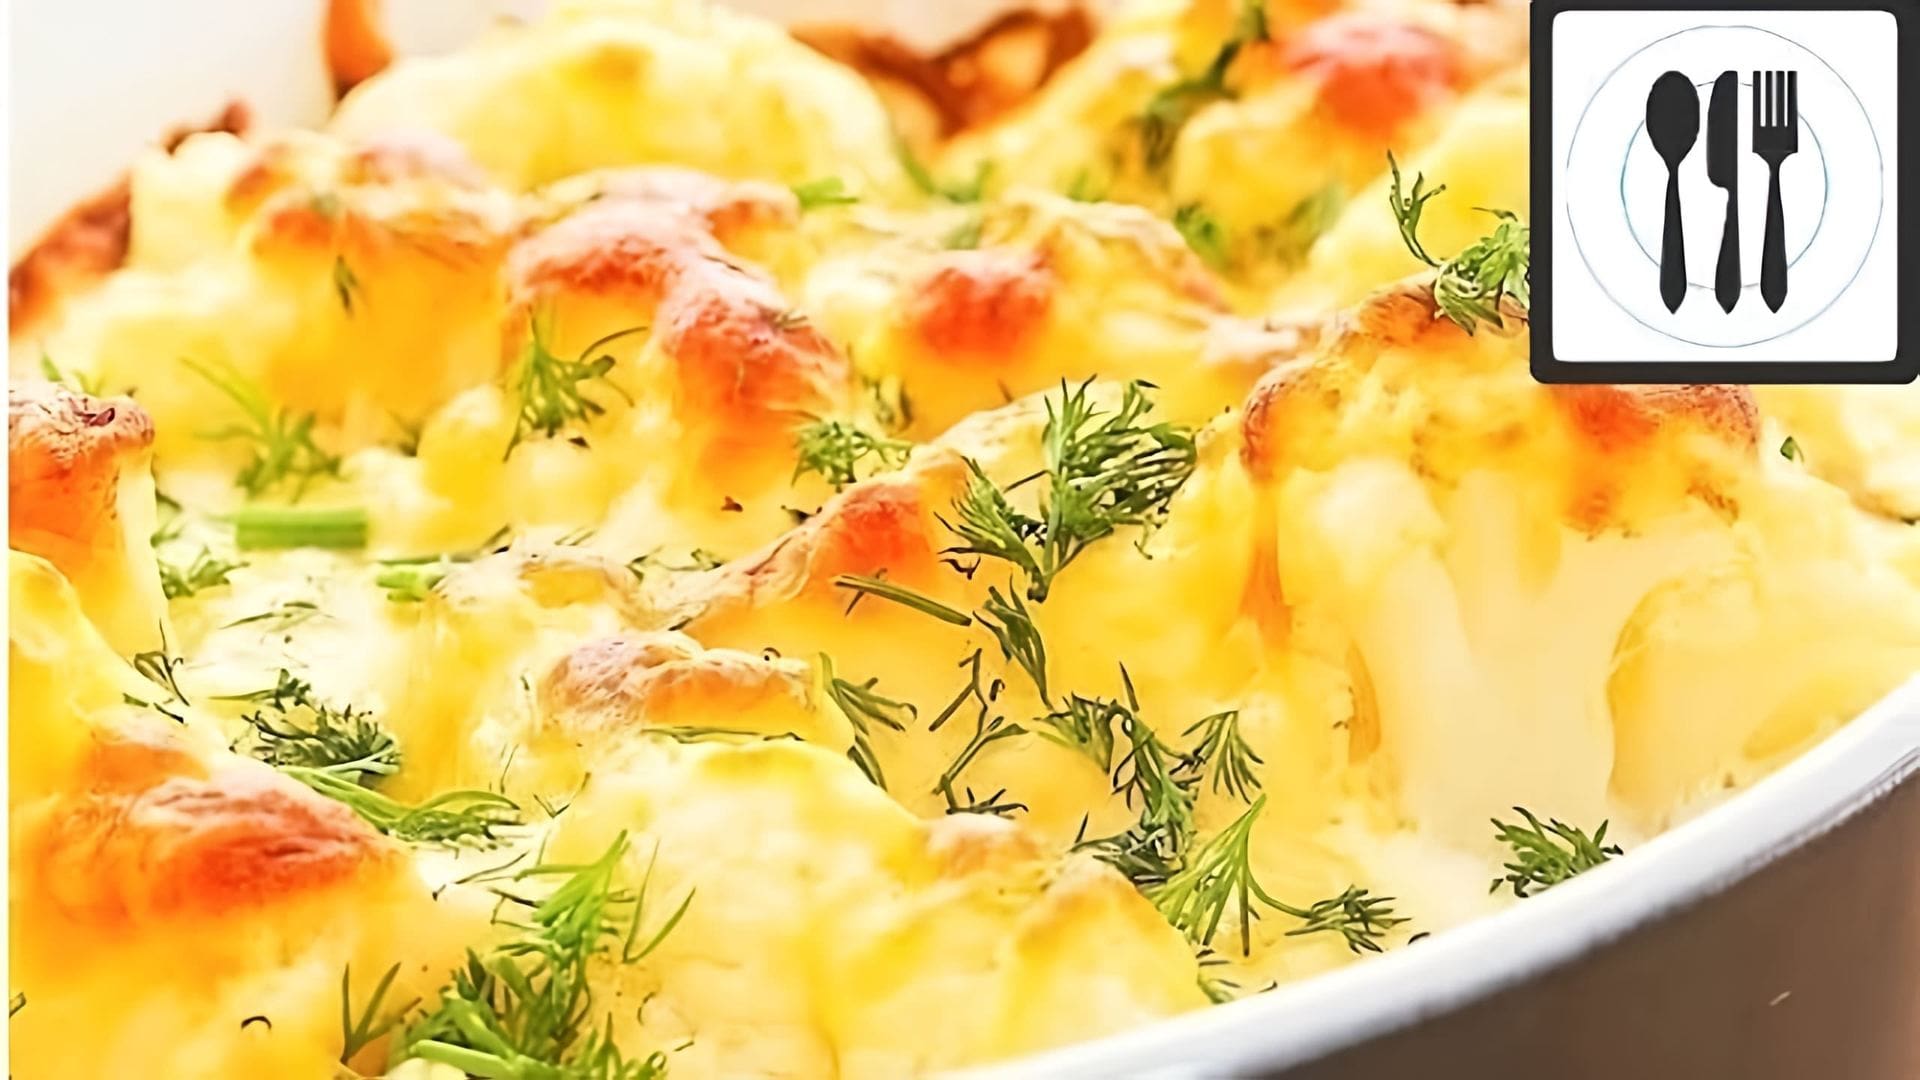 В этом видео демонстрируется рецепт приготовления цветной капусты в духовке с сыром